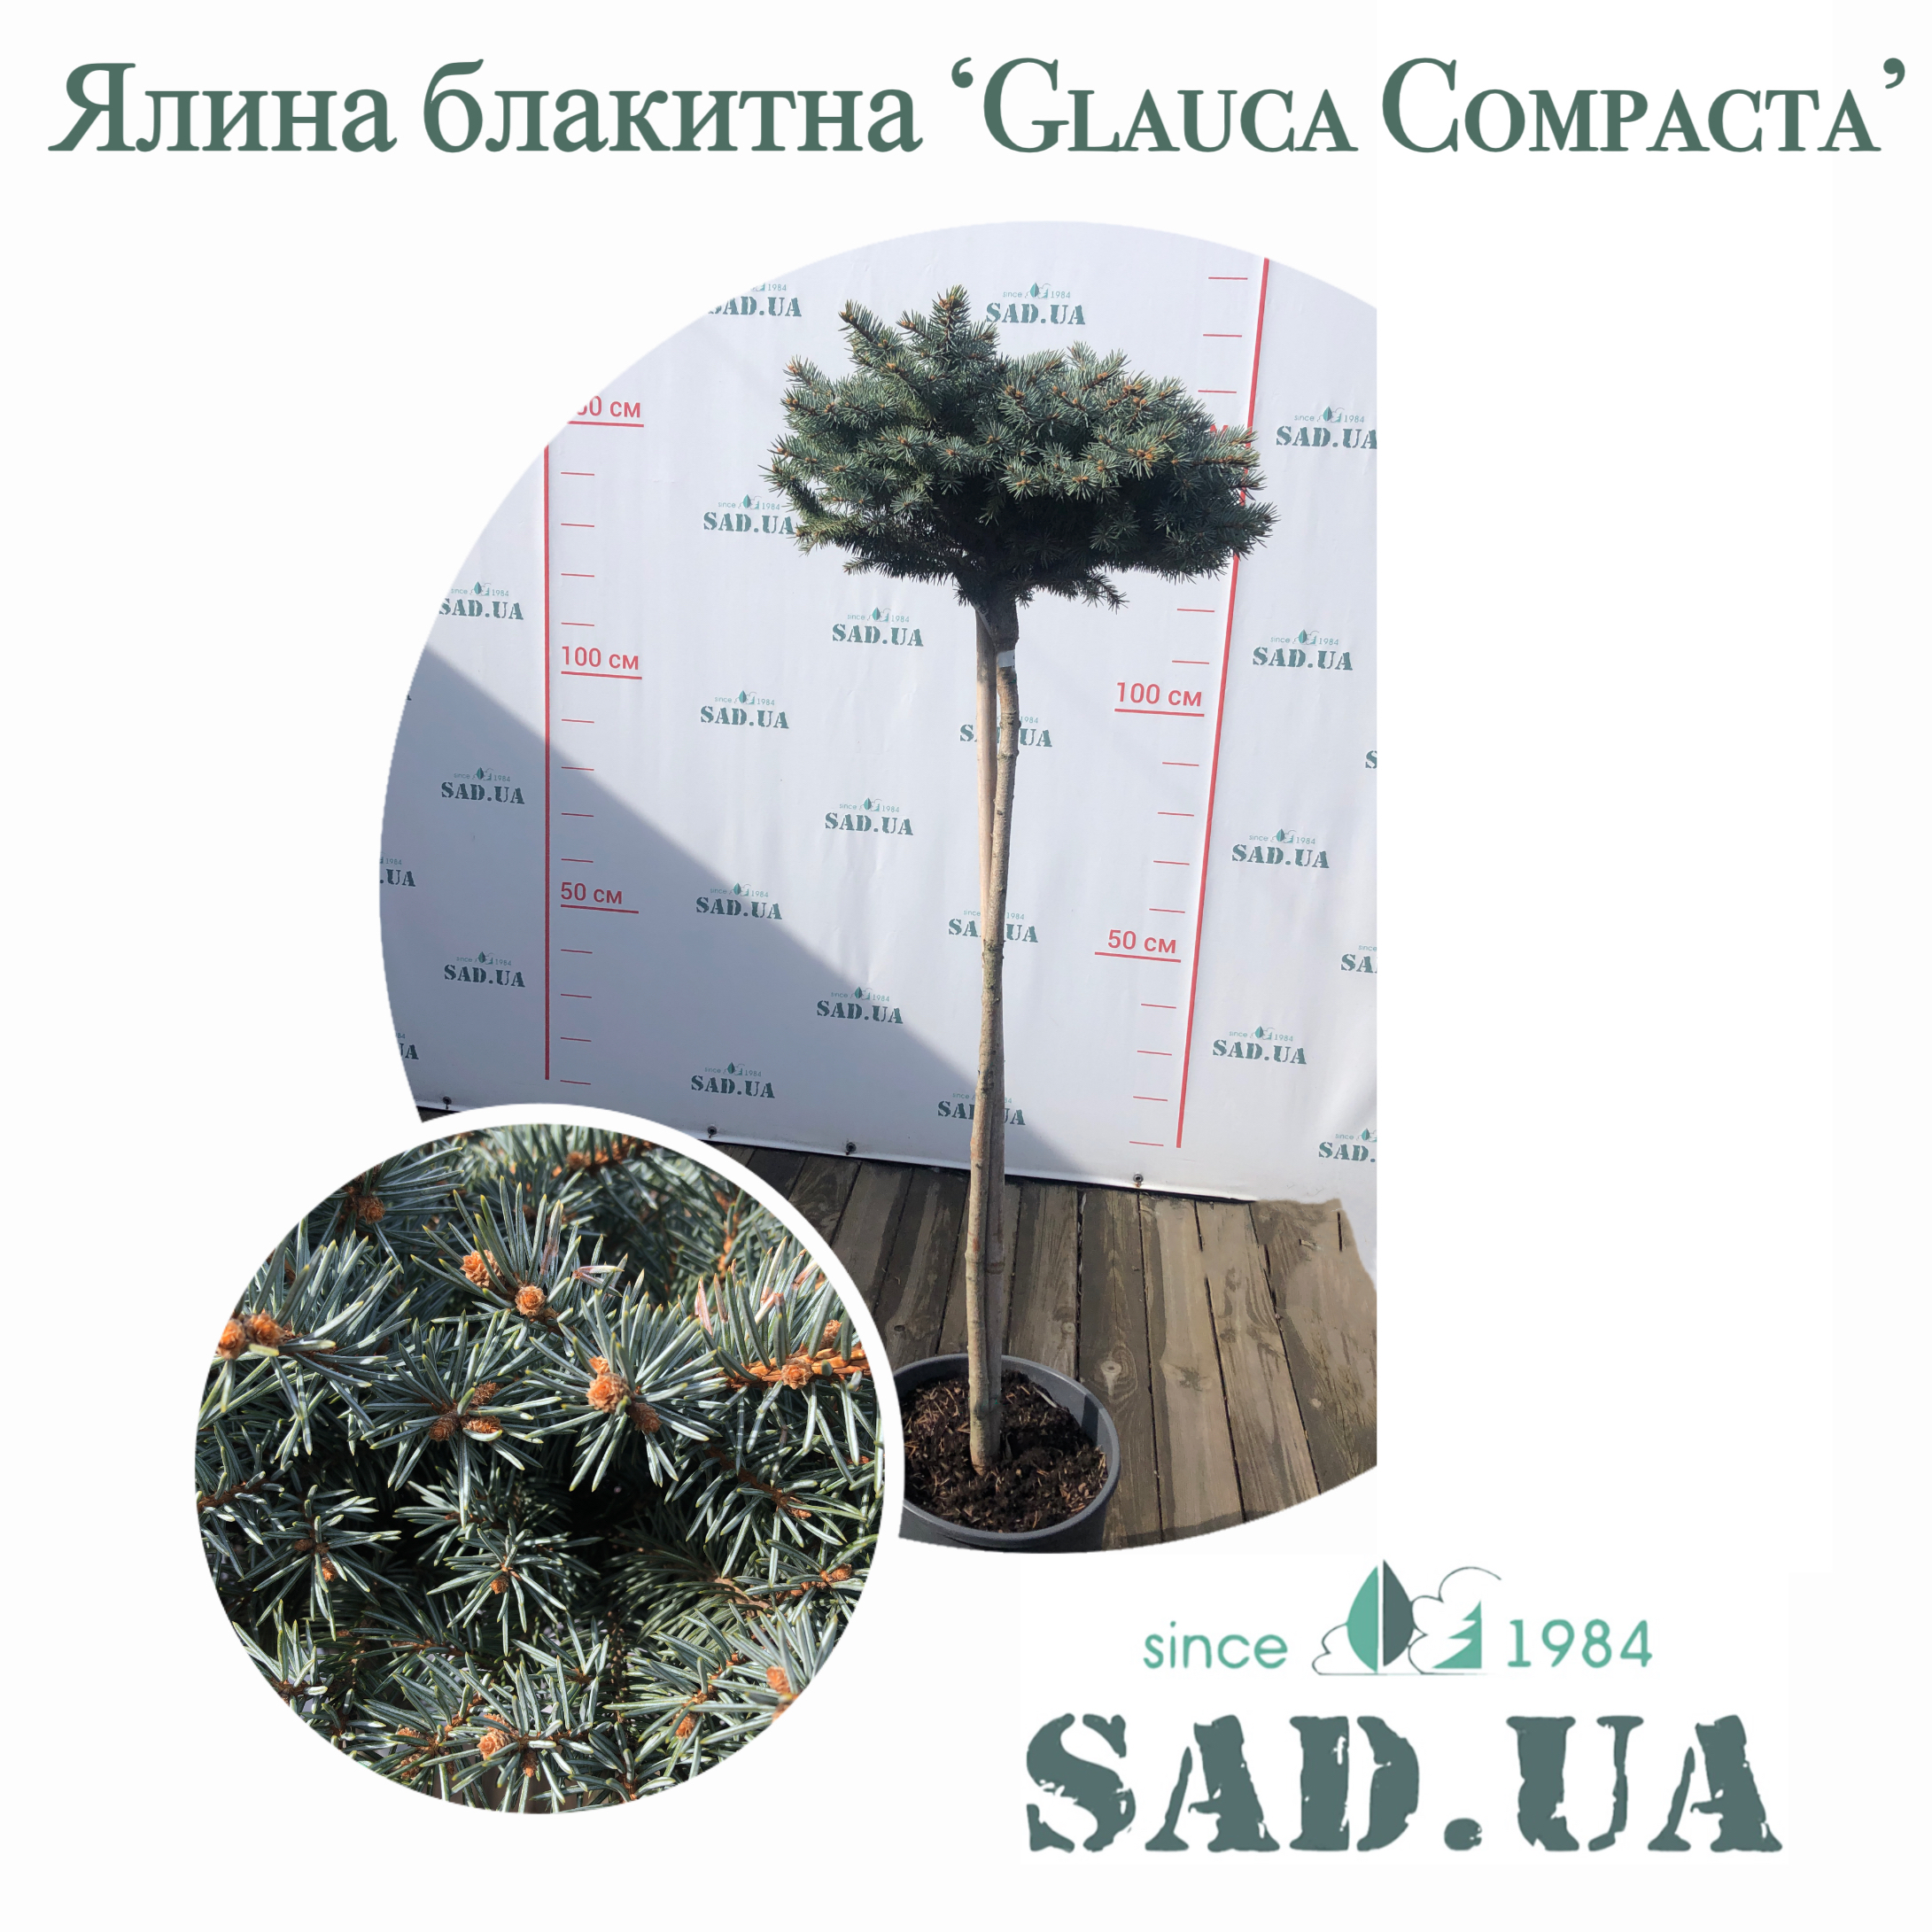 Ель Голубая Glauca Compacta, штамб 80см  (контейнер 18л) - 0 - SAD.UA 